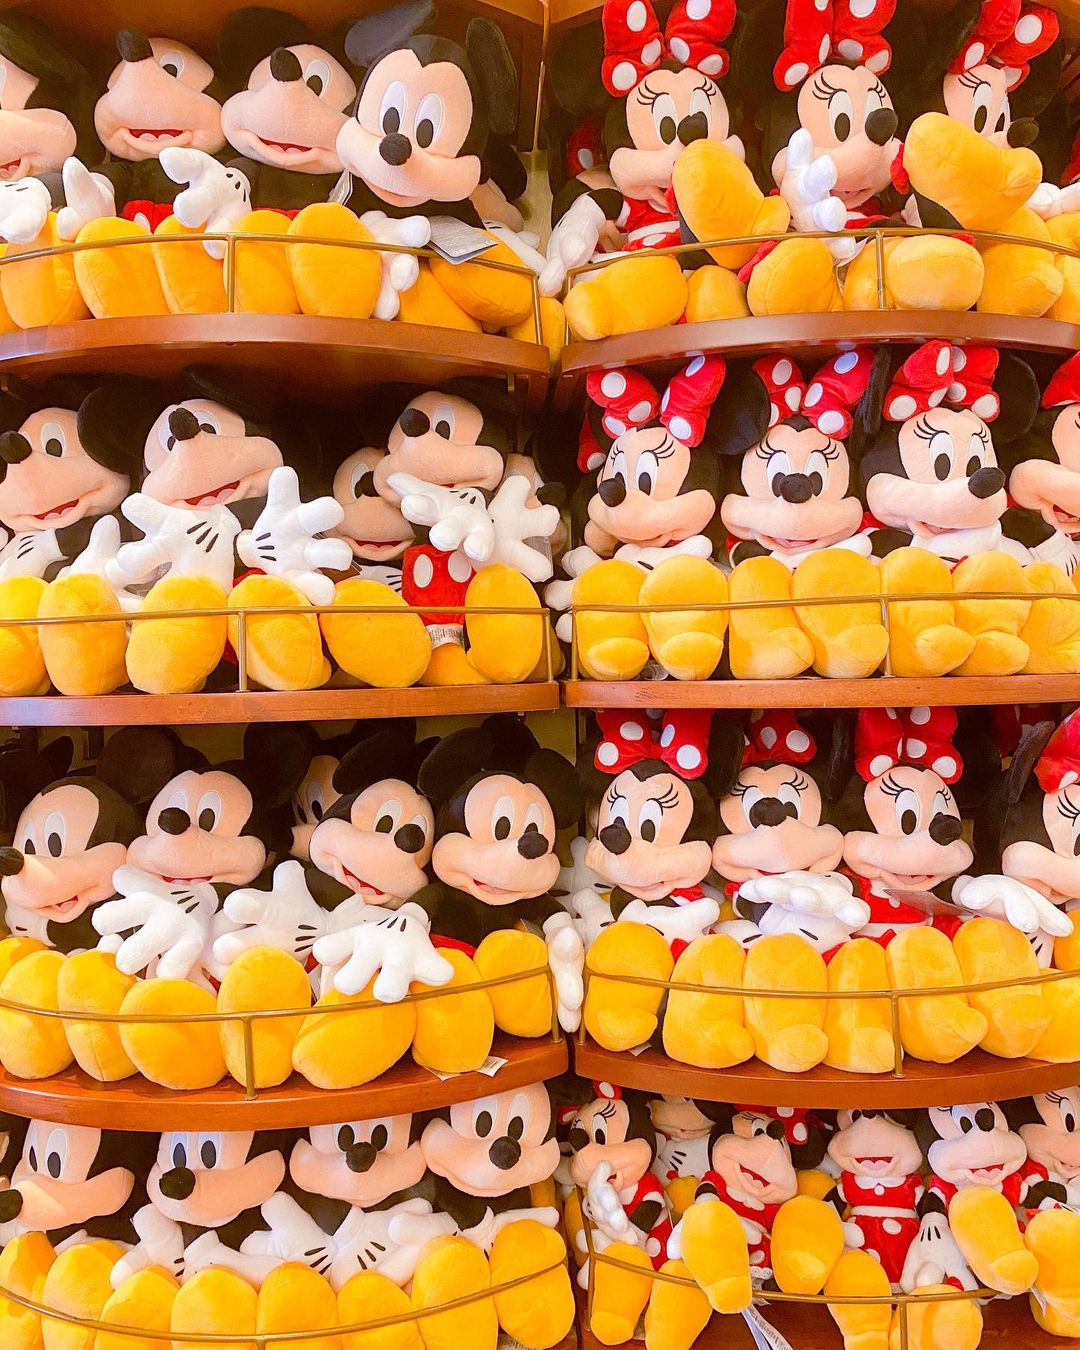 Disney plushies at the Emporium - Magic Kingdom Store